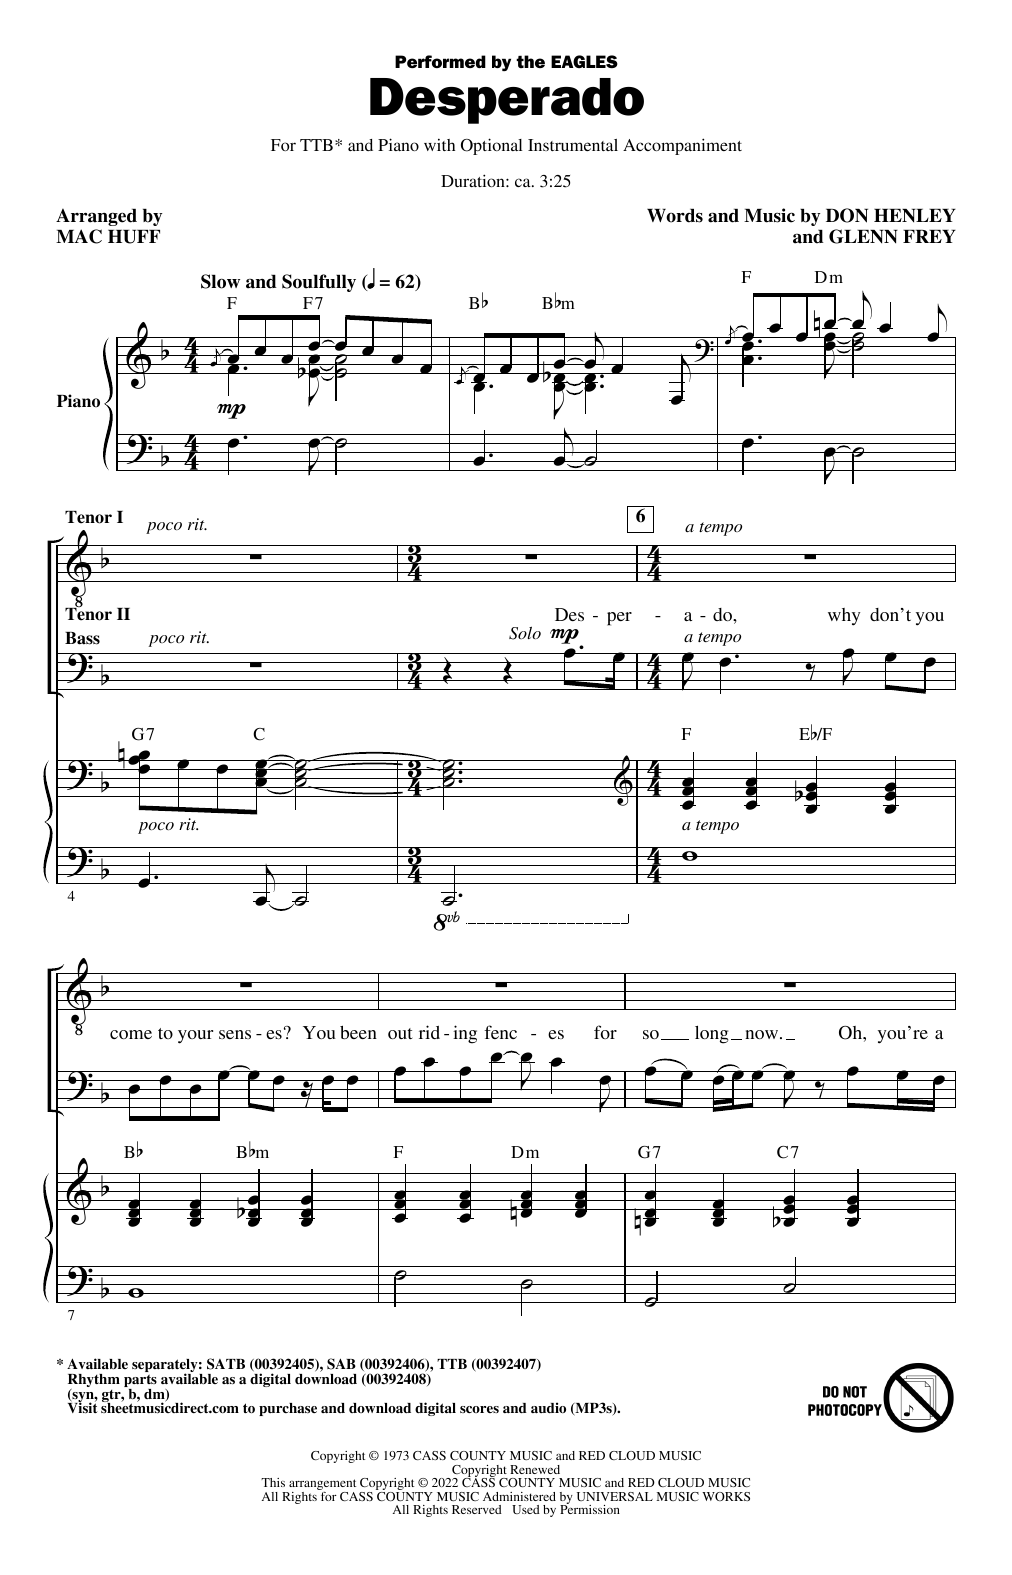 Eagles Desperado (arr. Mac Huff) Sheet Music Notes & Chords for TTBB Choir - Download or Print PDF